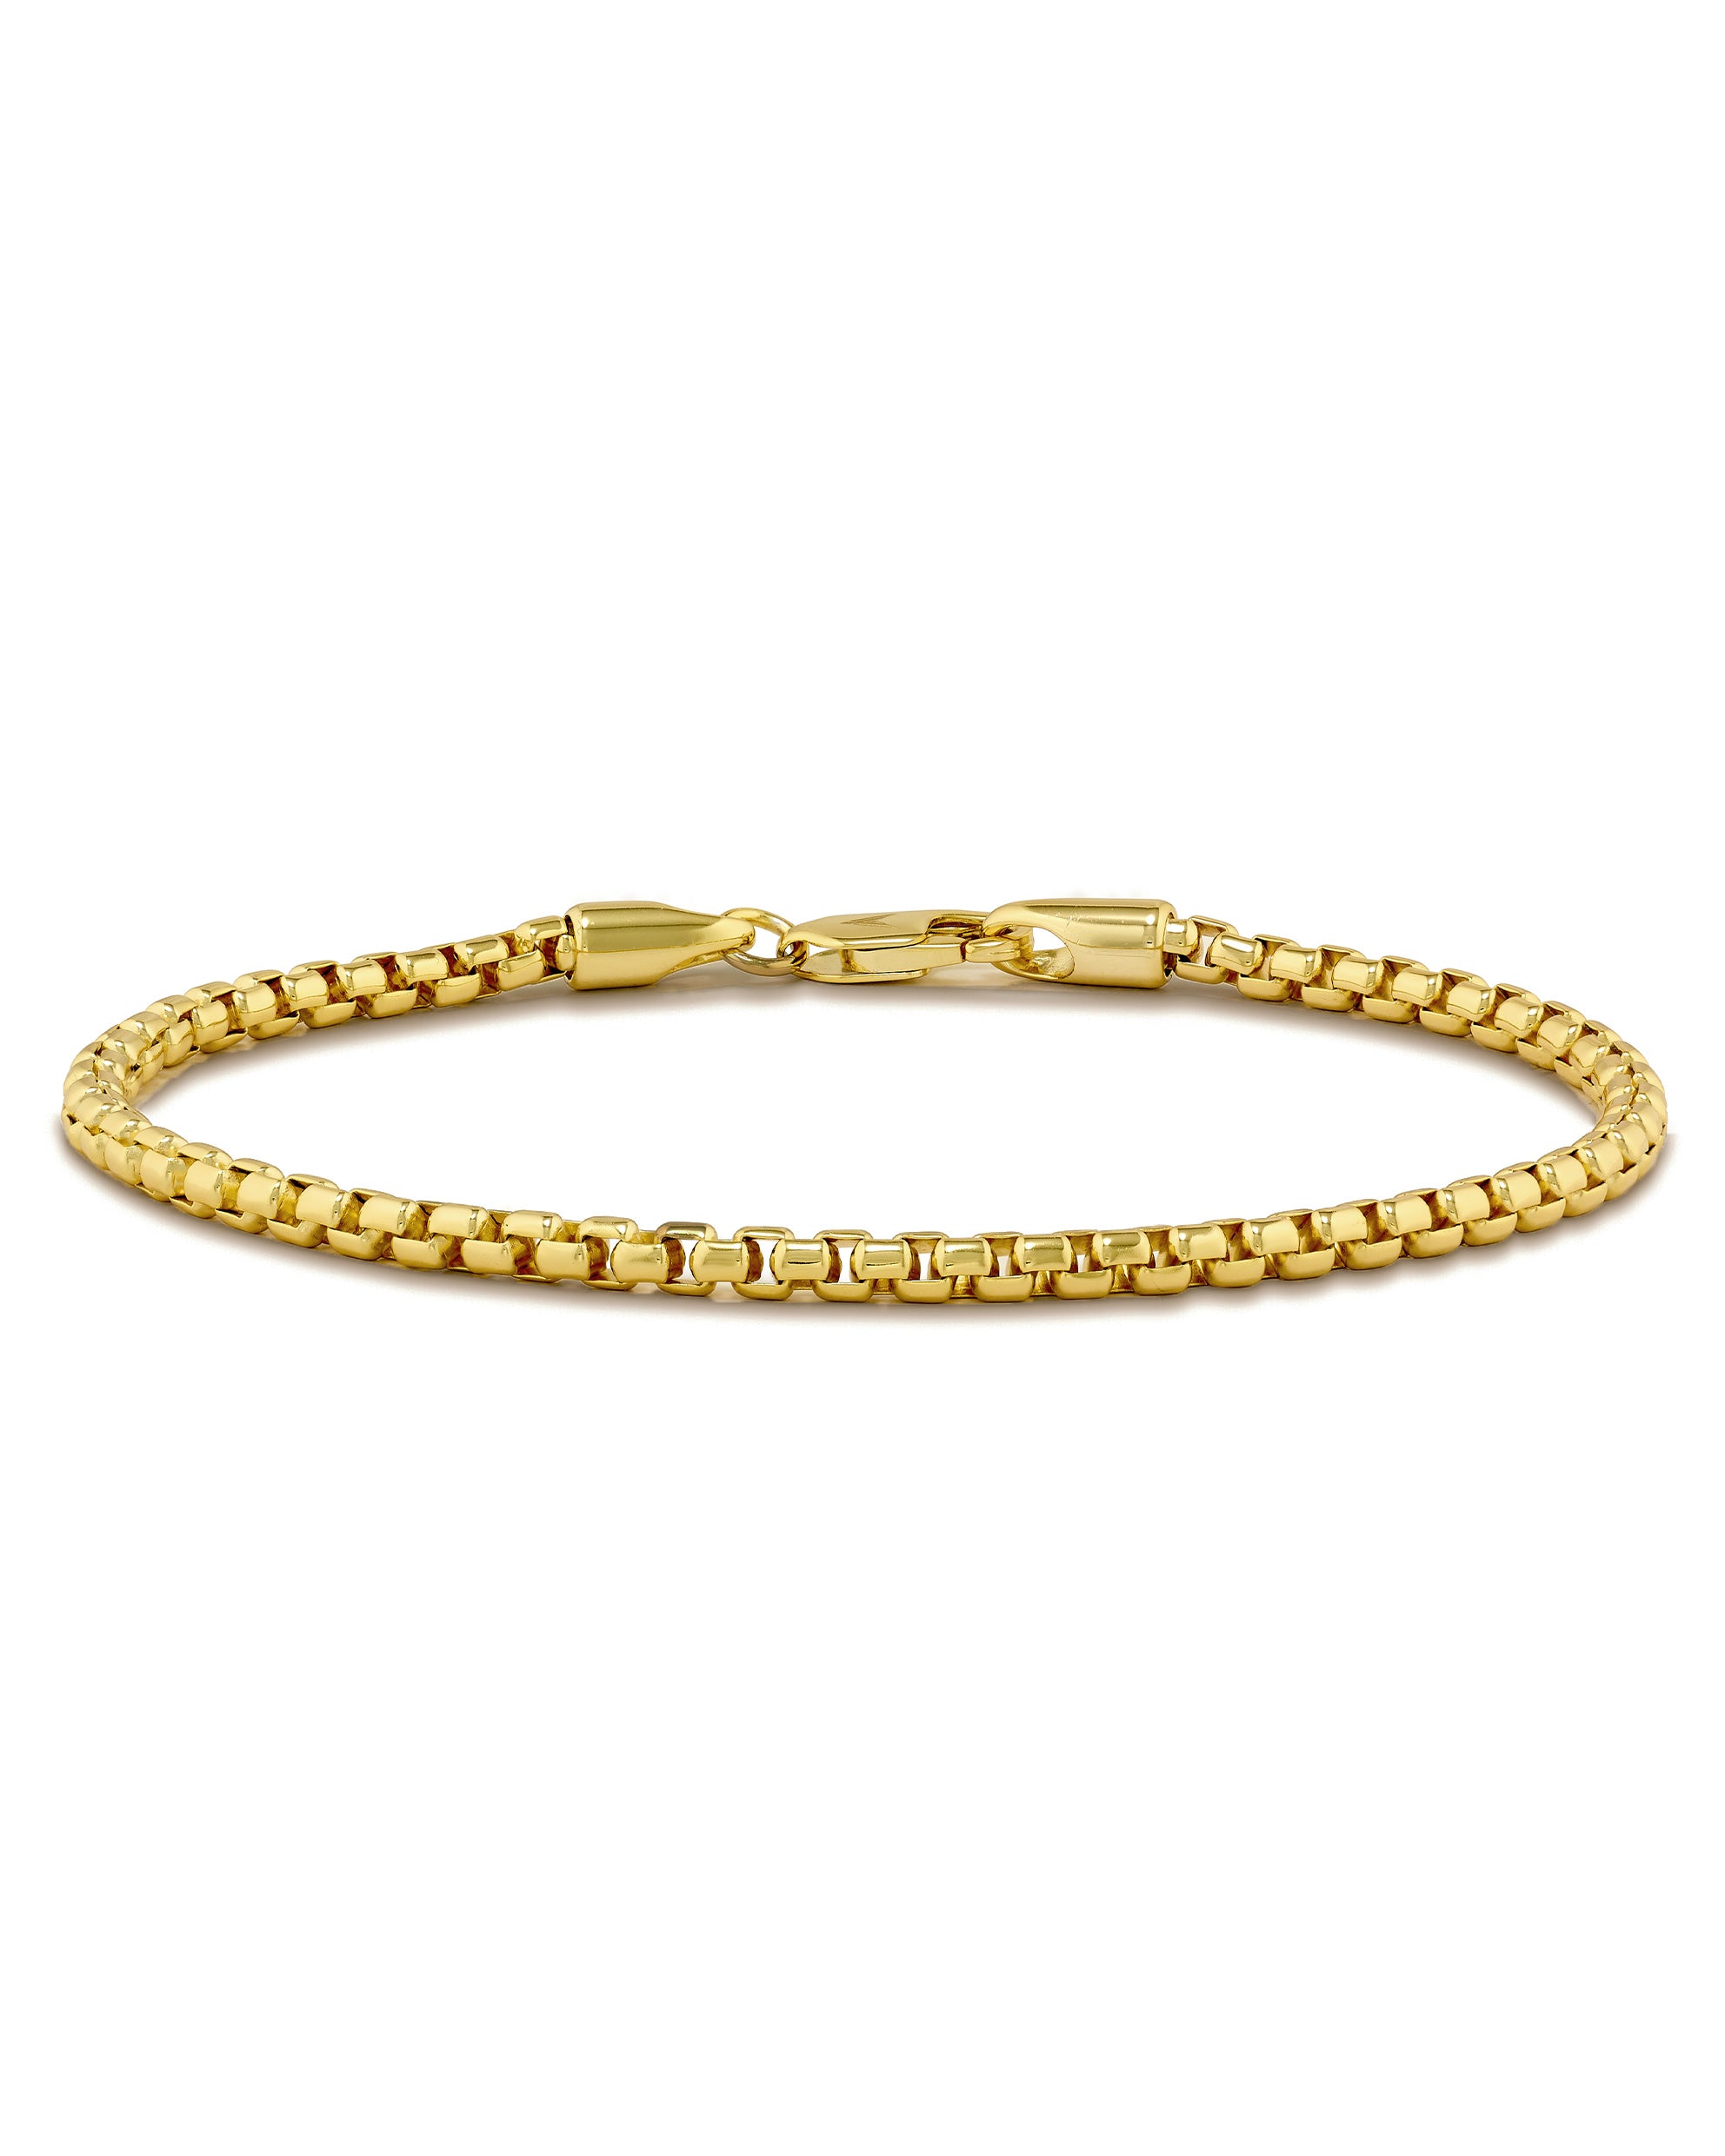 Bracelets | Mens bracelet gold jewelry, Jewelry bracelets gold, Man gold bracelet  design